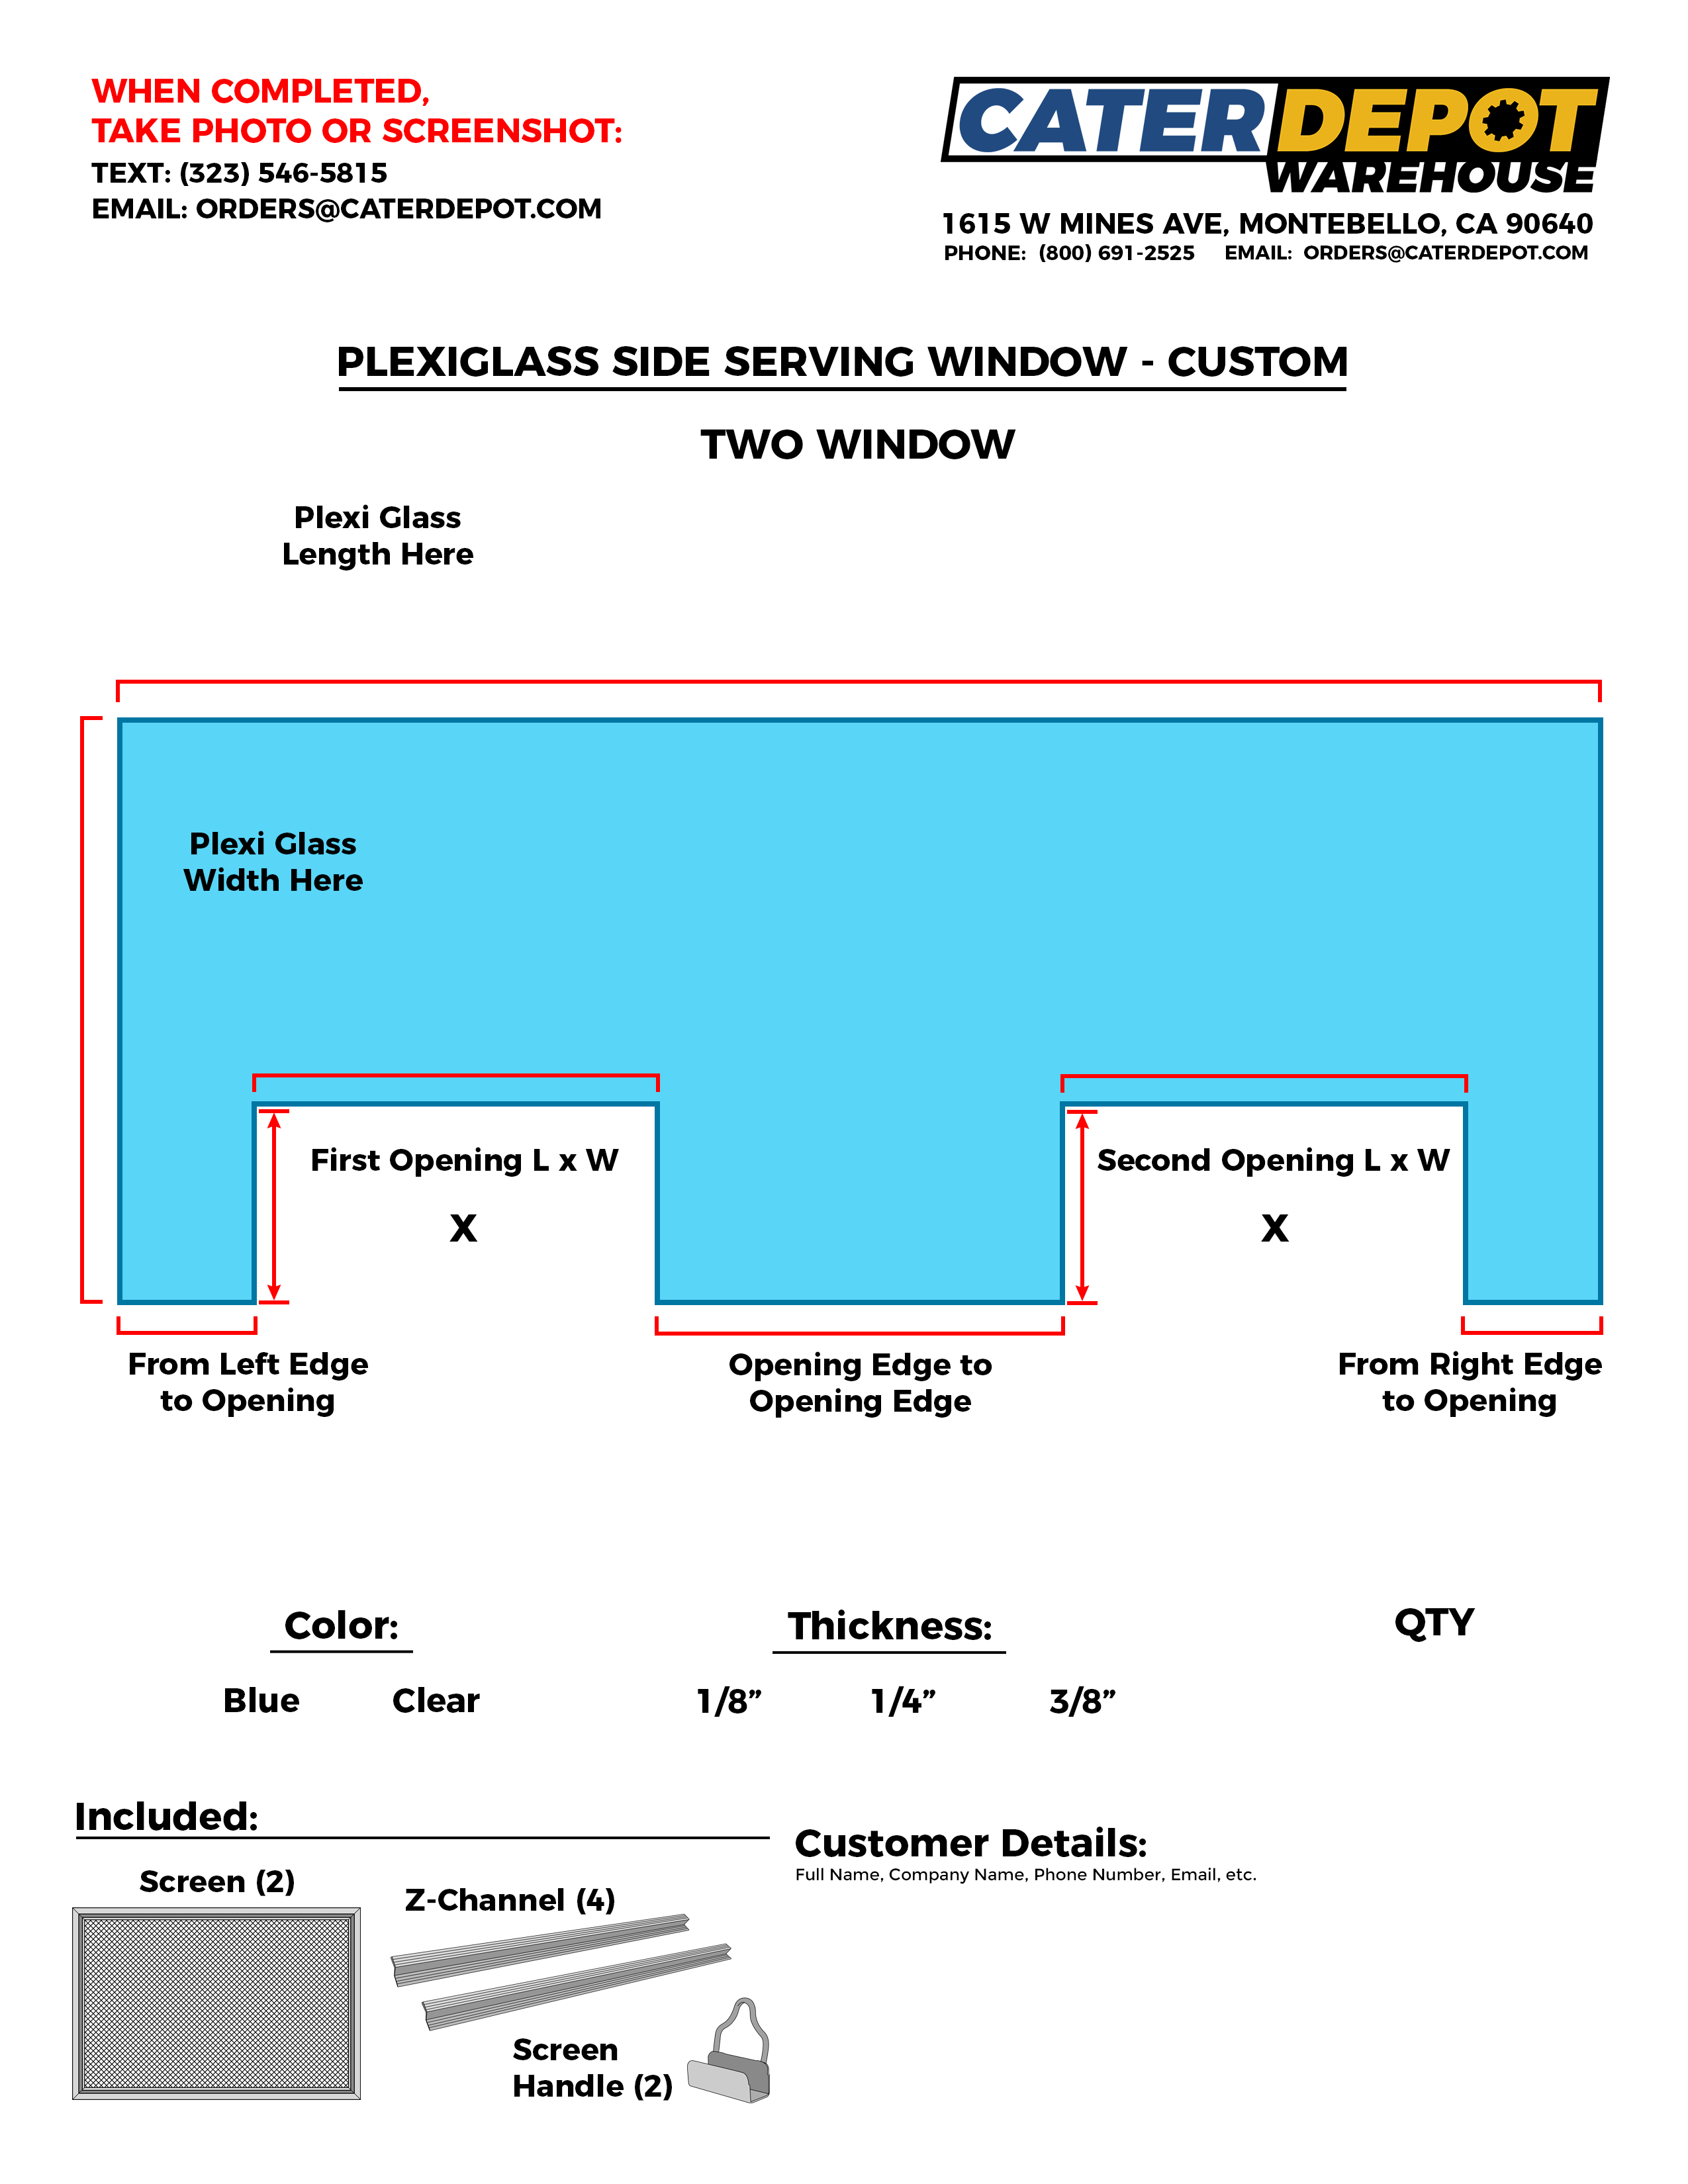 Custom Plexiglass Side Serving Window - One Window